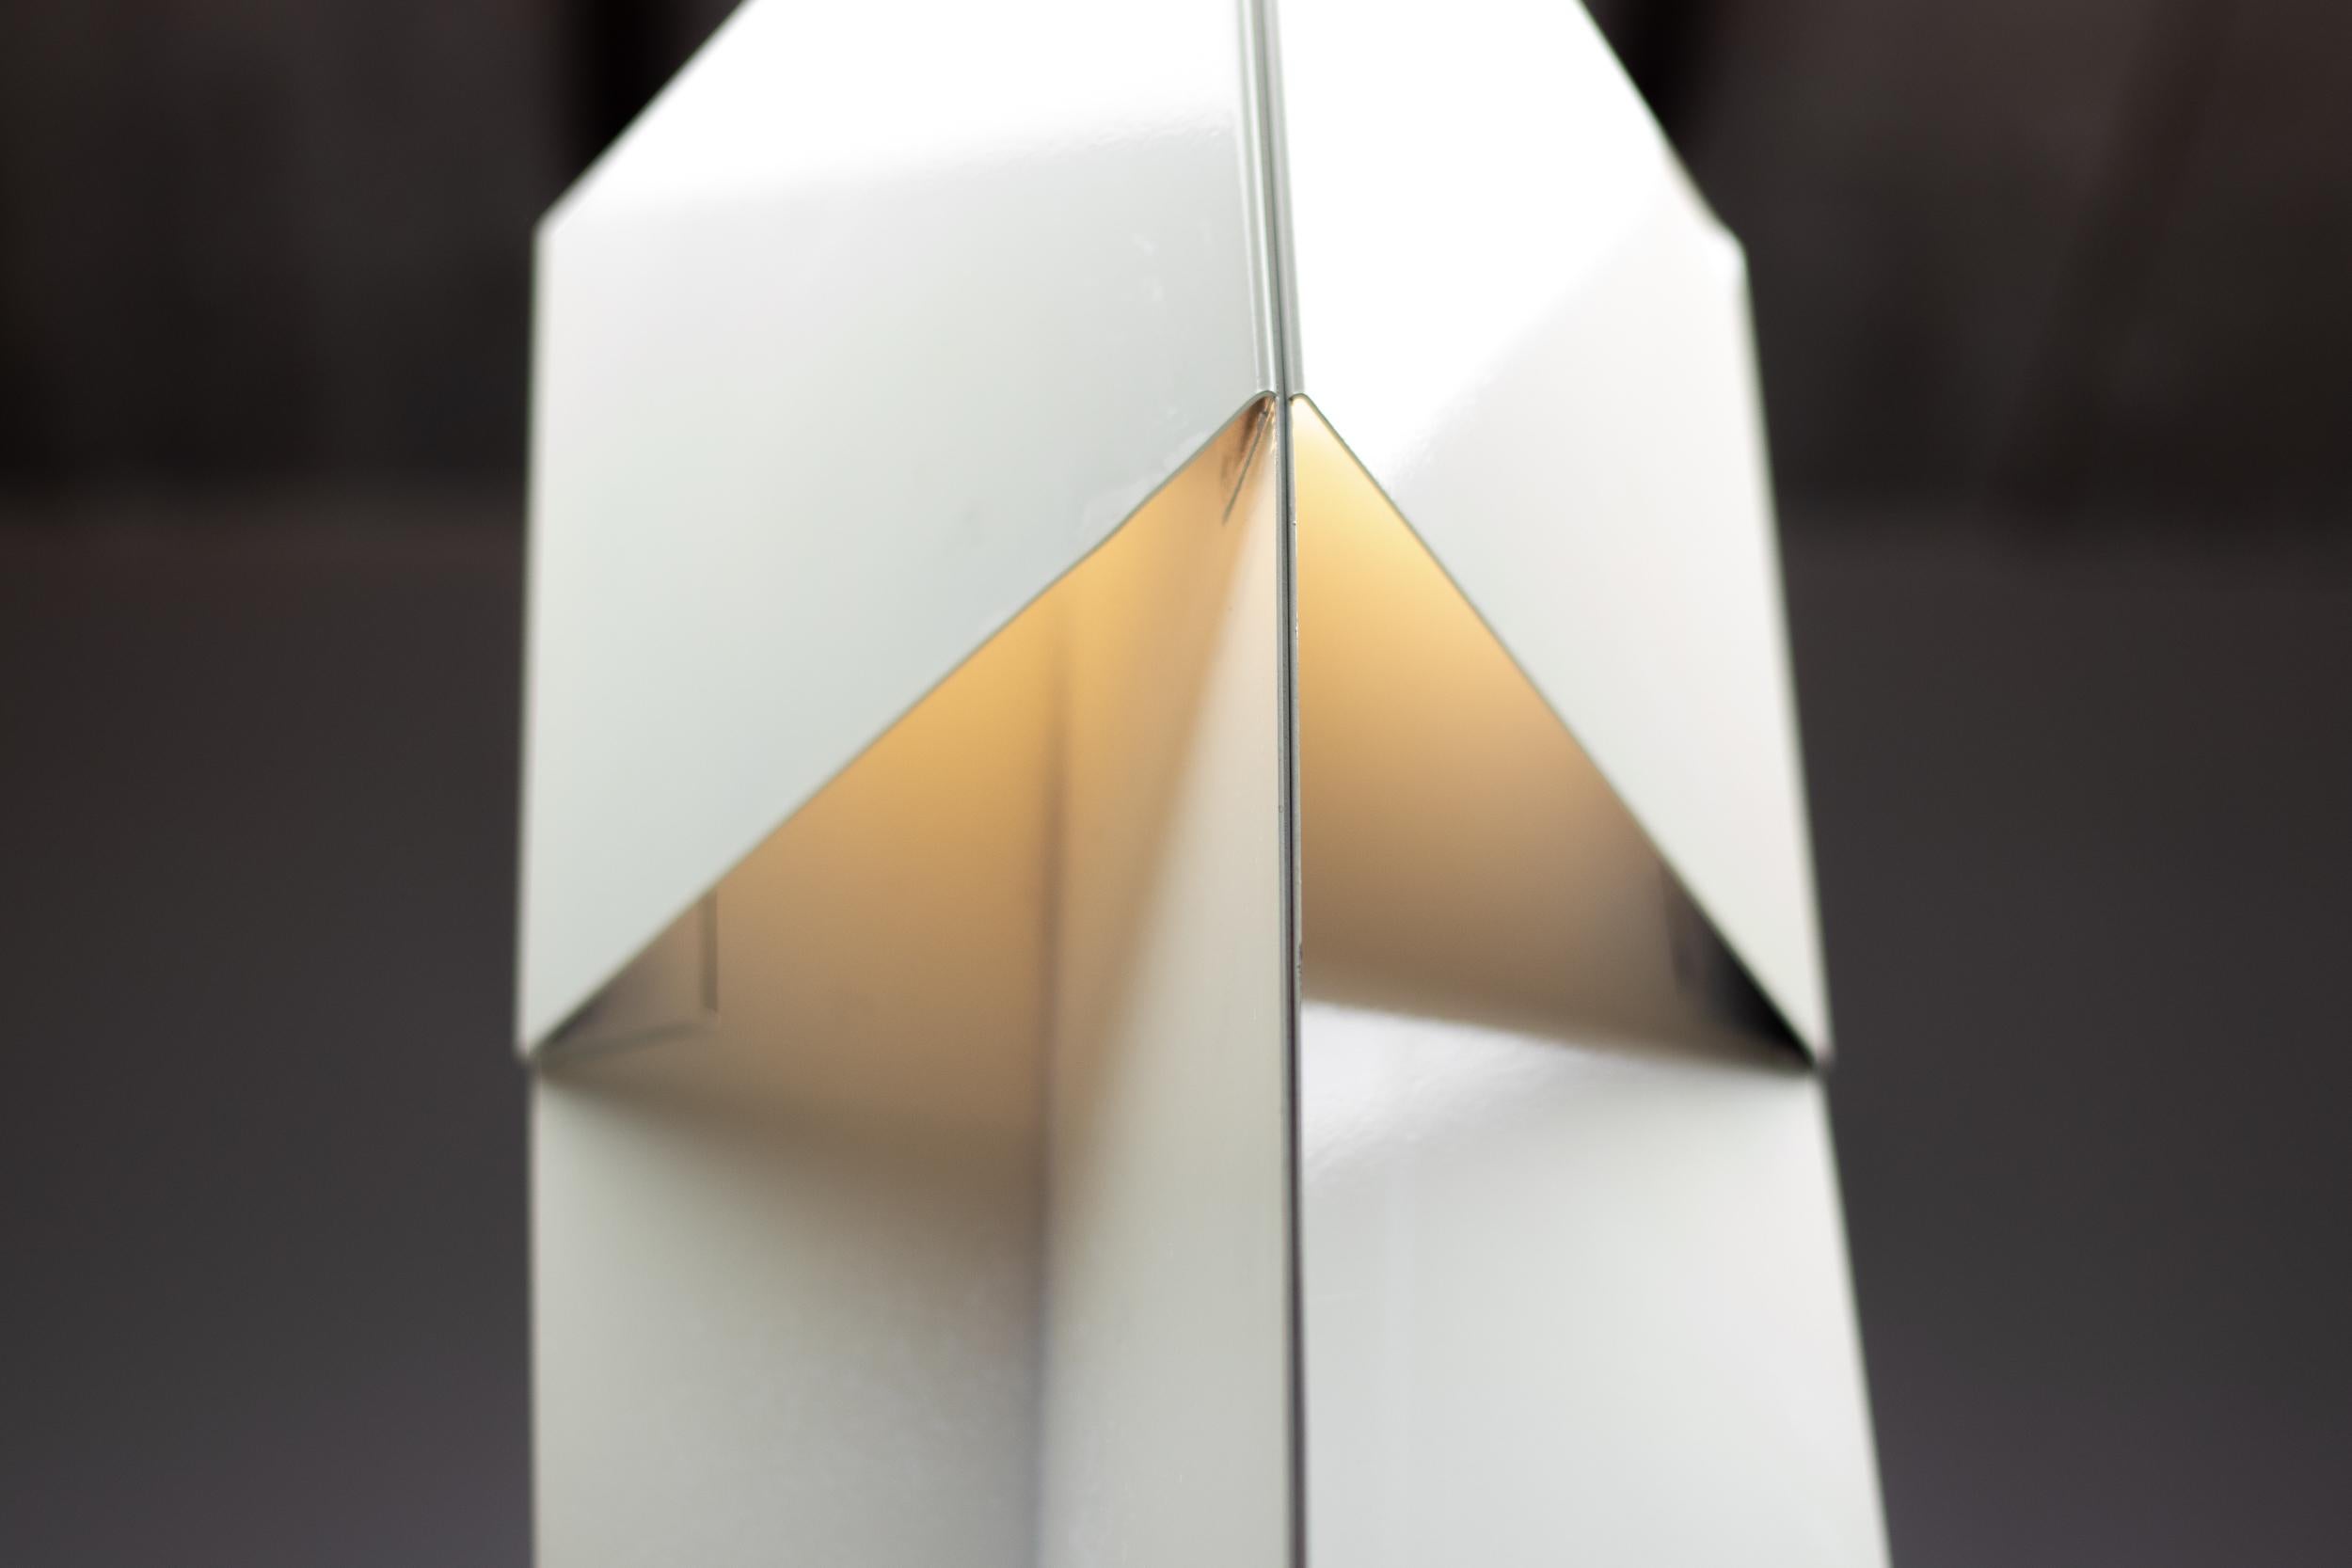 Skulpturale Stehleuchte aus verdrehtem Blech, entworfen von Mart Van Schijndel für Martech, um 1970. 
Uplighter mit Halogenglühbirne. Kann auch mit einer LED-Glühbirne verwendet werden.
Die komplexe, verdrehte Form führt zu einem dramatischen Spiel